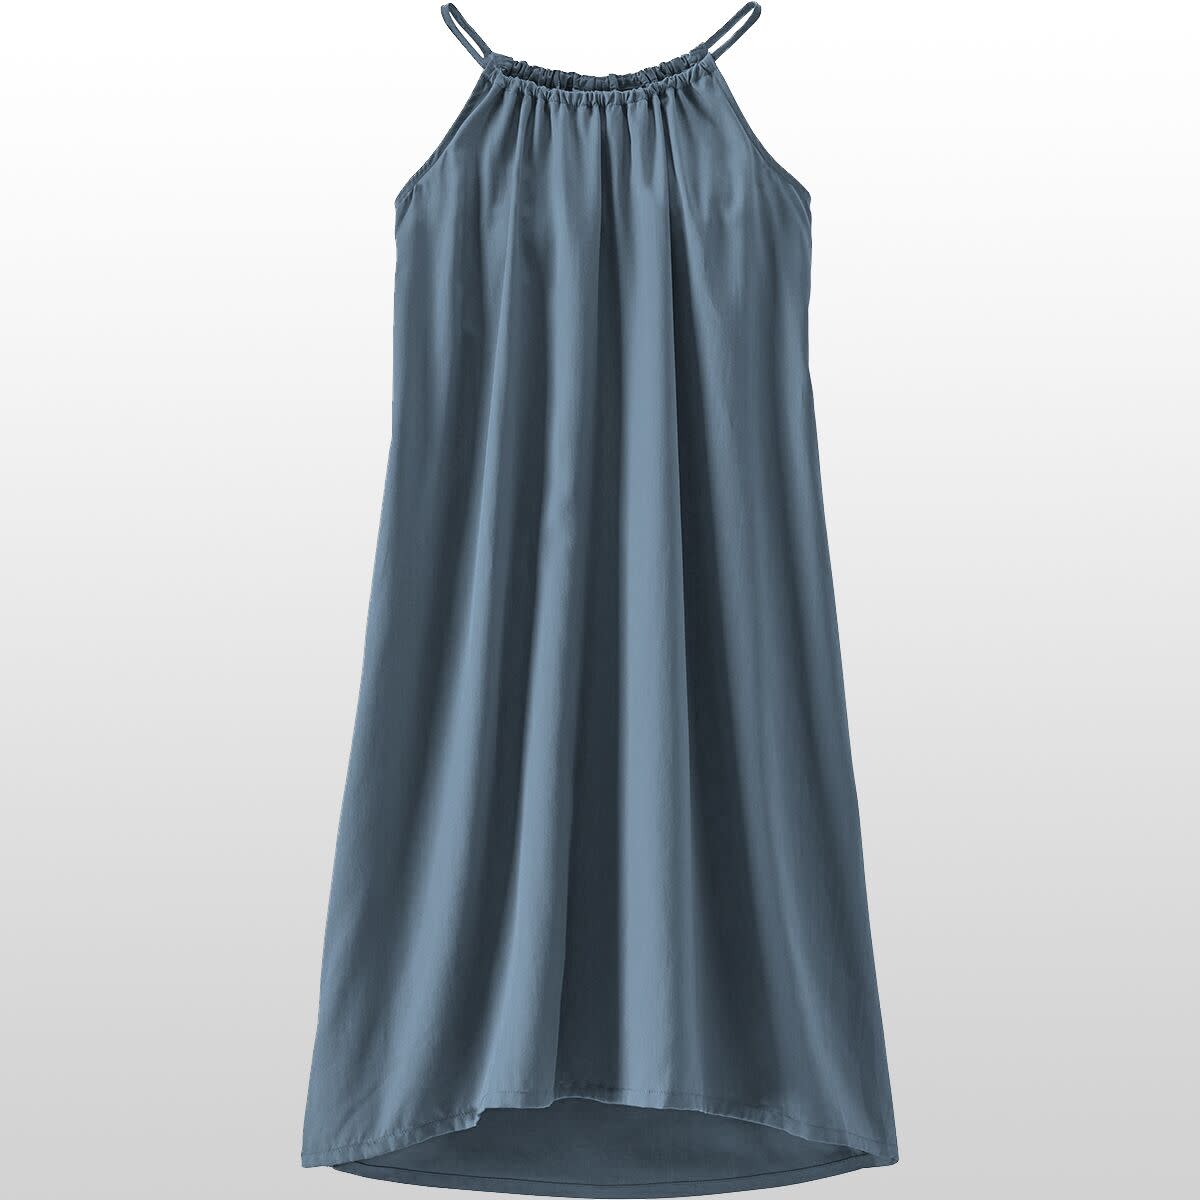 Blue swing dress